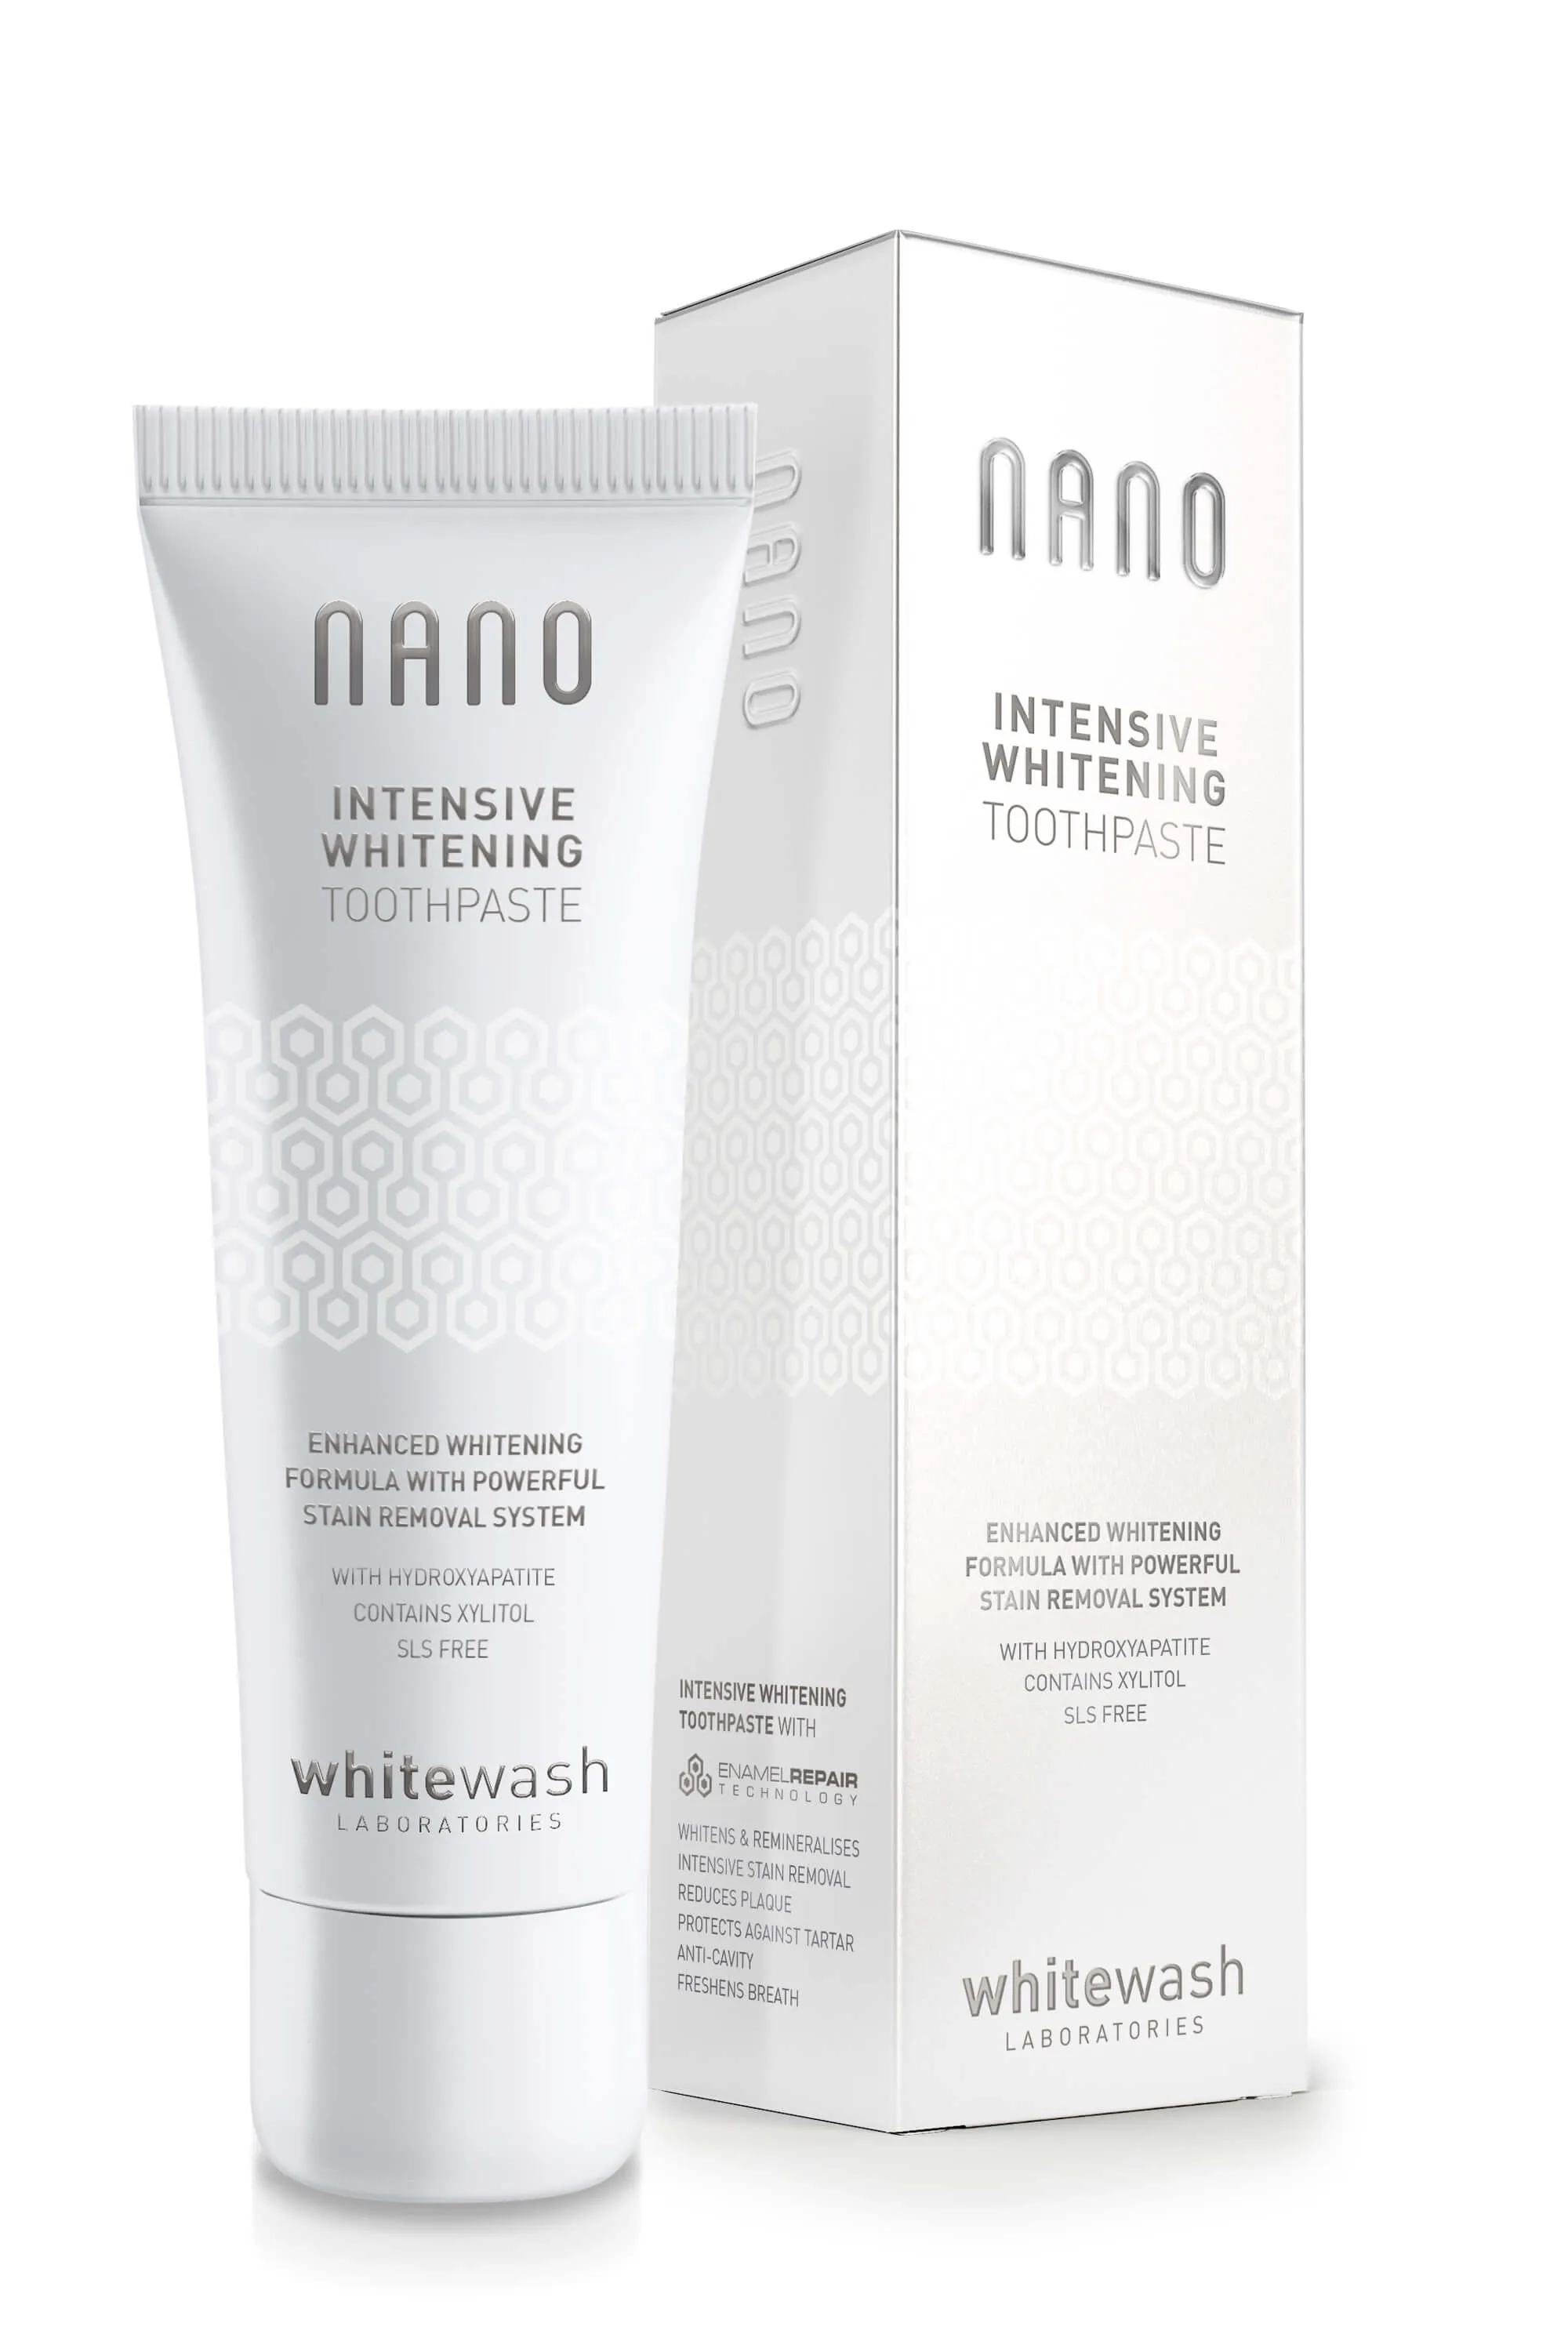 Whitewash Nano Intensive Whitening Toothpaste intensywnie wybielająca pasta do zębów z technologią Enamel Care, 75 ml 